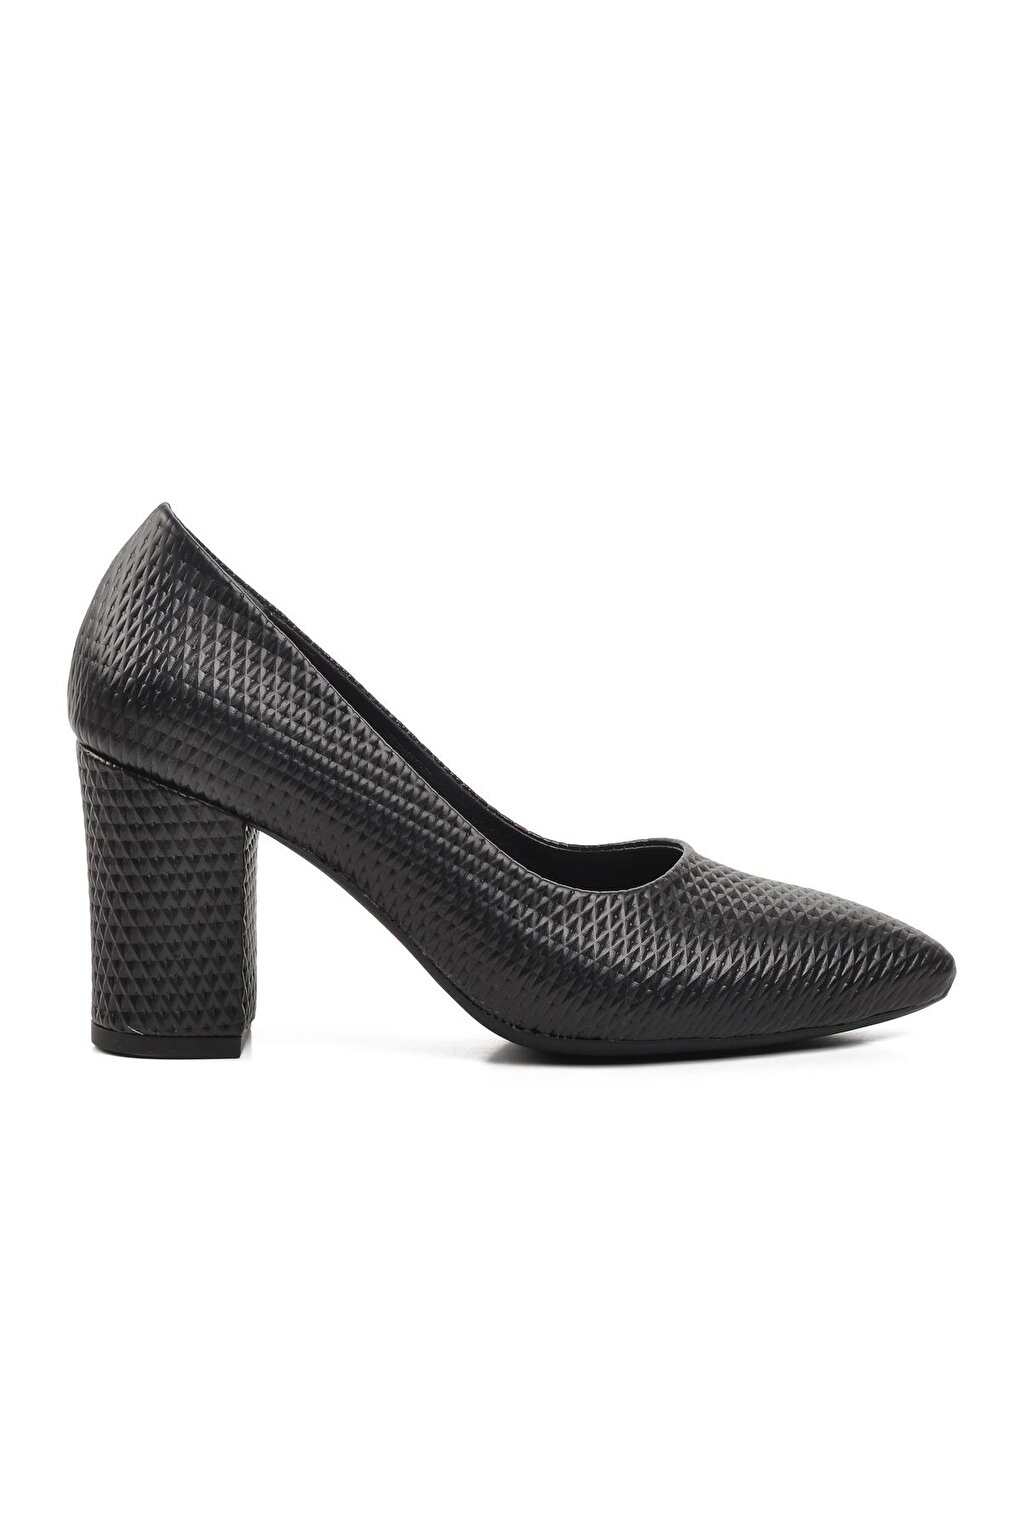 289204 Черные женские туфли на каблуке Ayakmod цена и фото